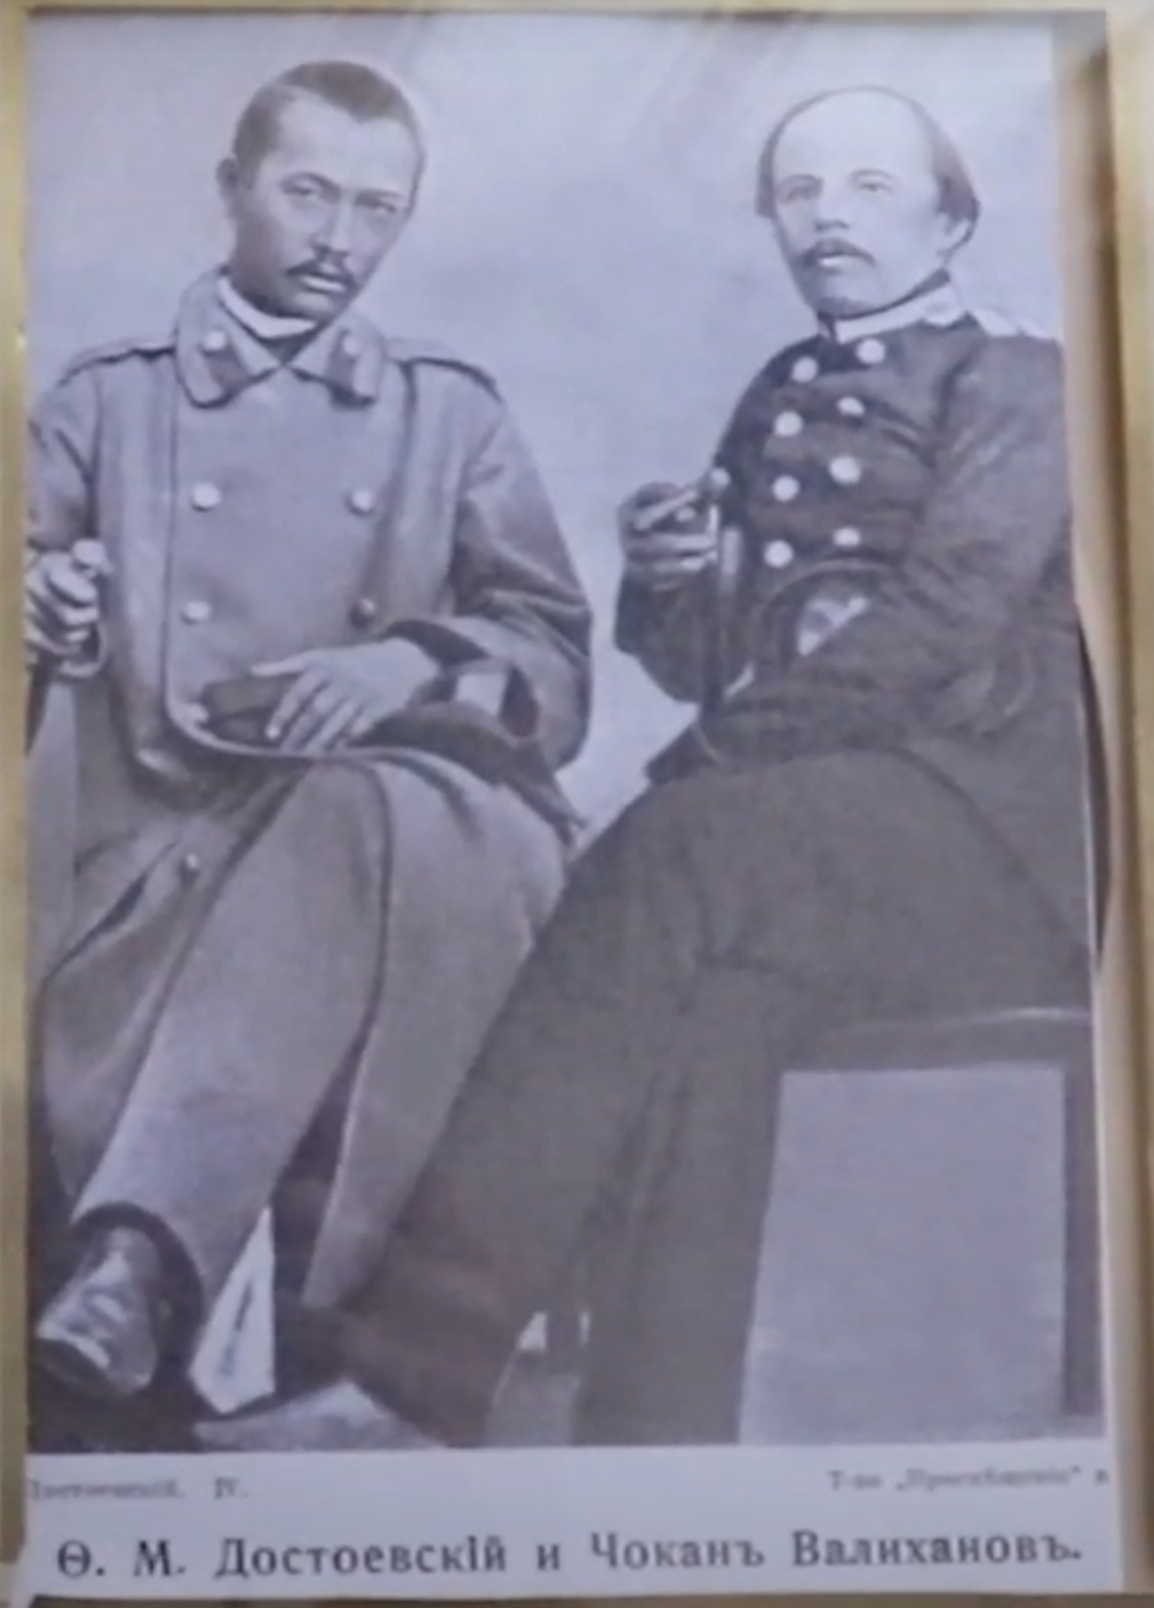 Шокан Валиханов и Федор Достоевский в Семипалатинске (Семее)